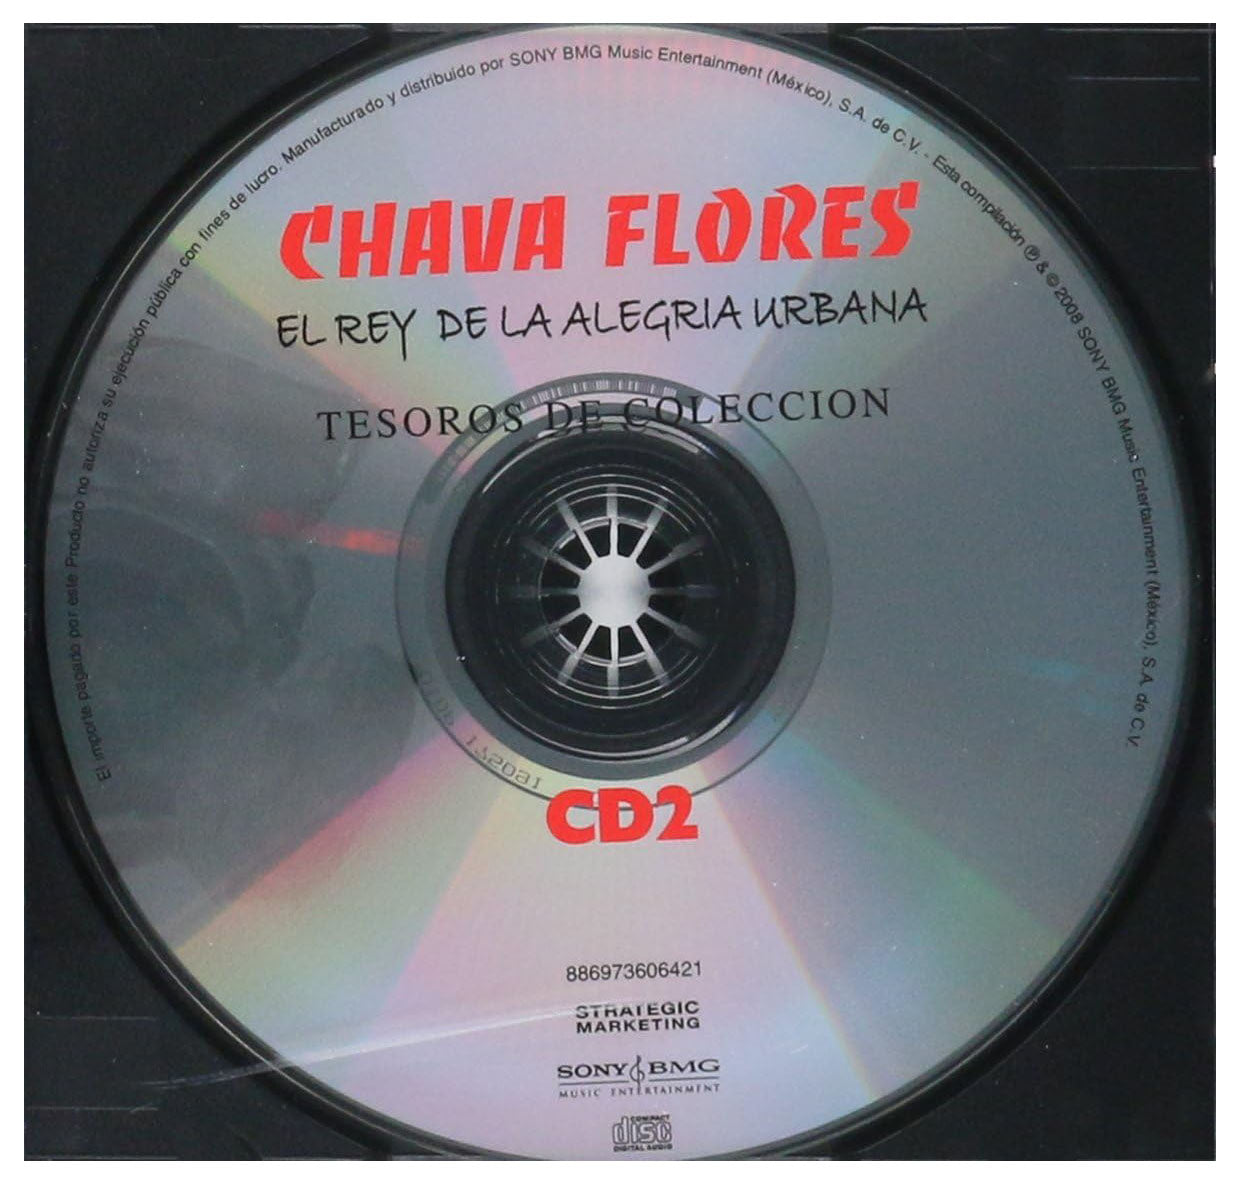 Chava Flores Tesoros De Coleccion El Rey De La Alegria Urbana 3CD